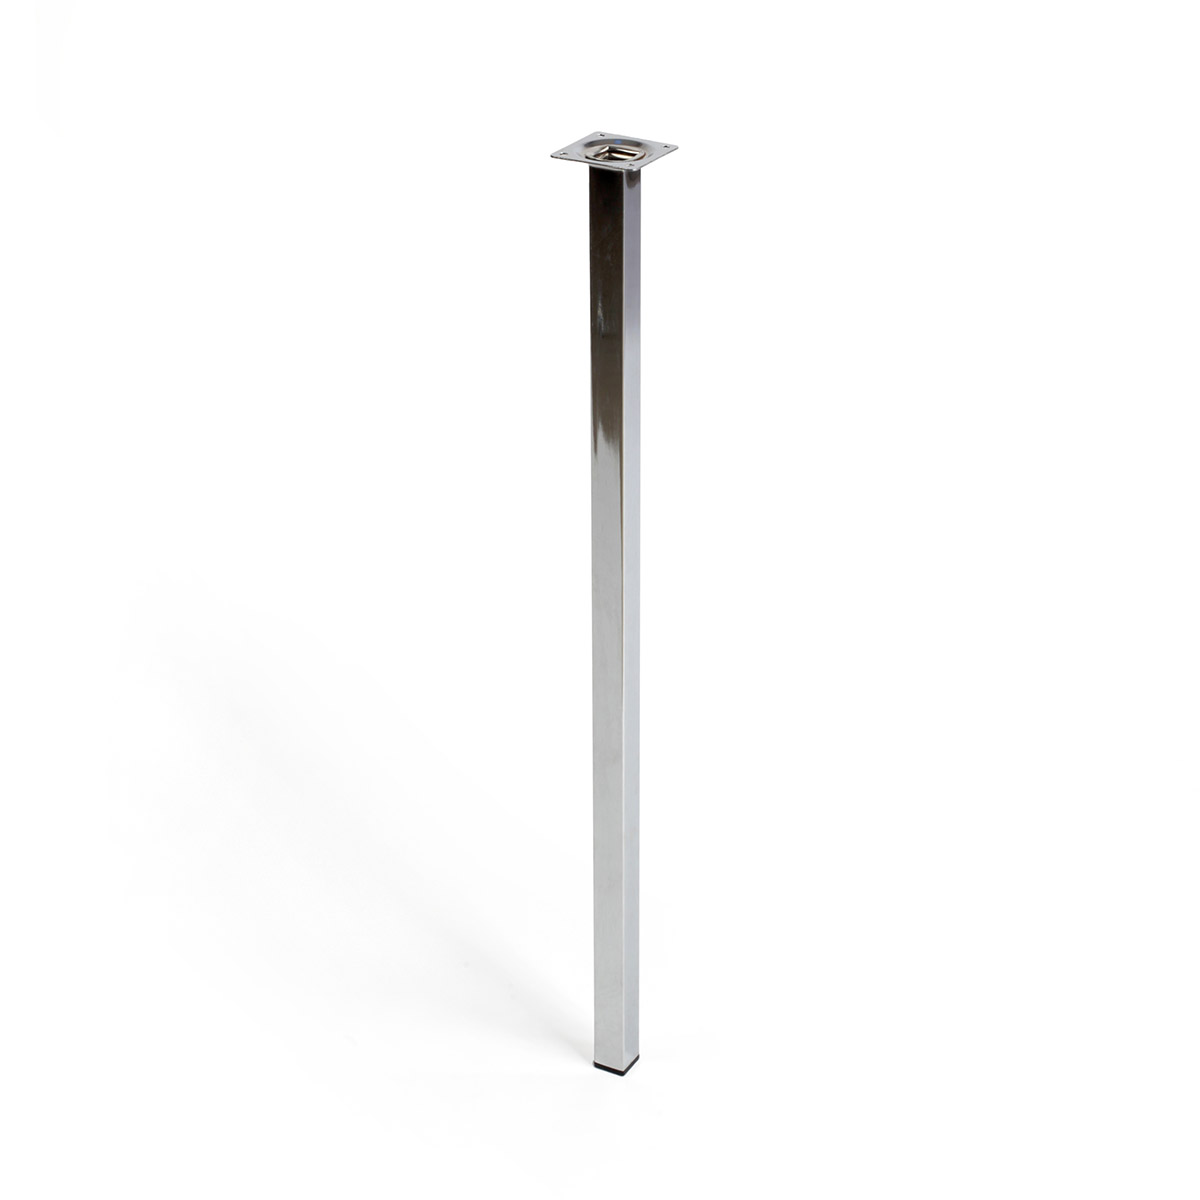 Pata de acero cuadrada con una altura de 700 mm y acabada en cromo brillo. Dimensiones: 25x25x700 mm